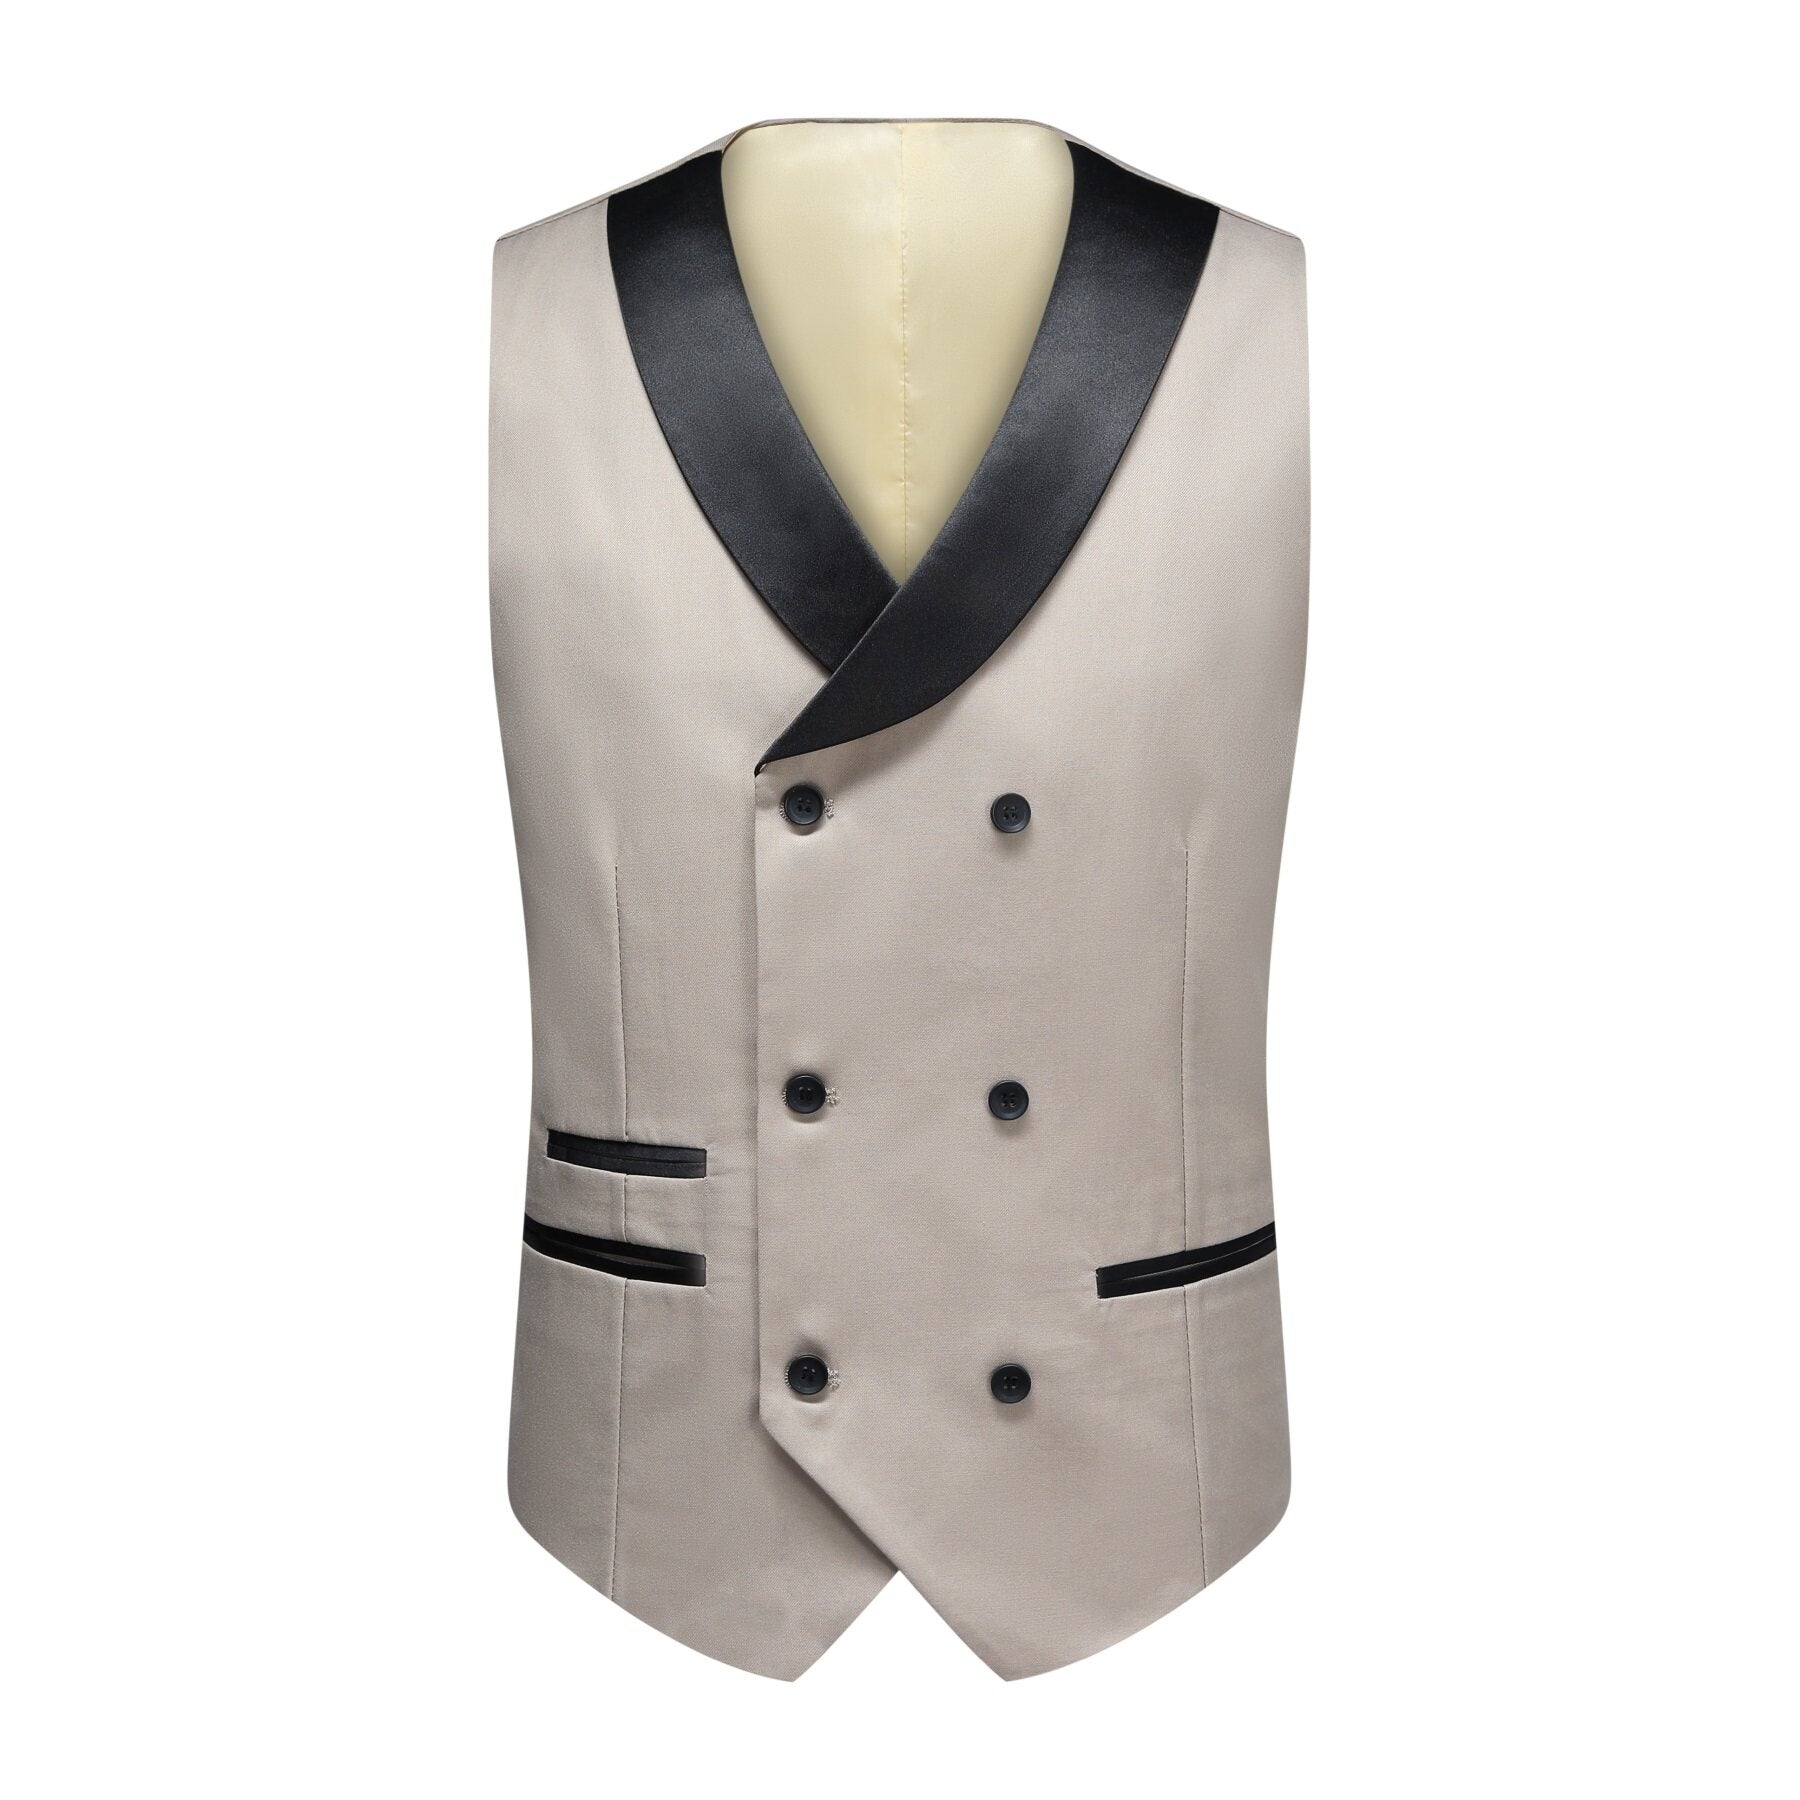 3-piece Men's Solid Color Notched Lapel Back Center Vent Suit Beige